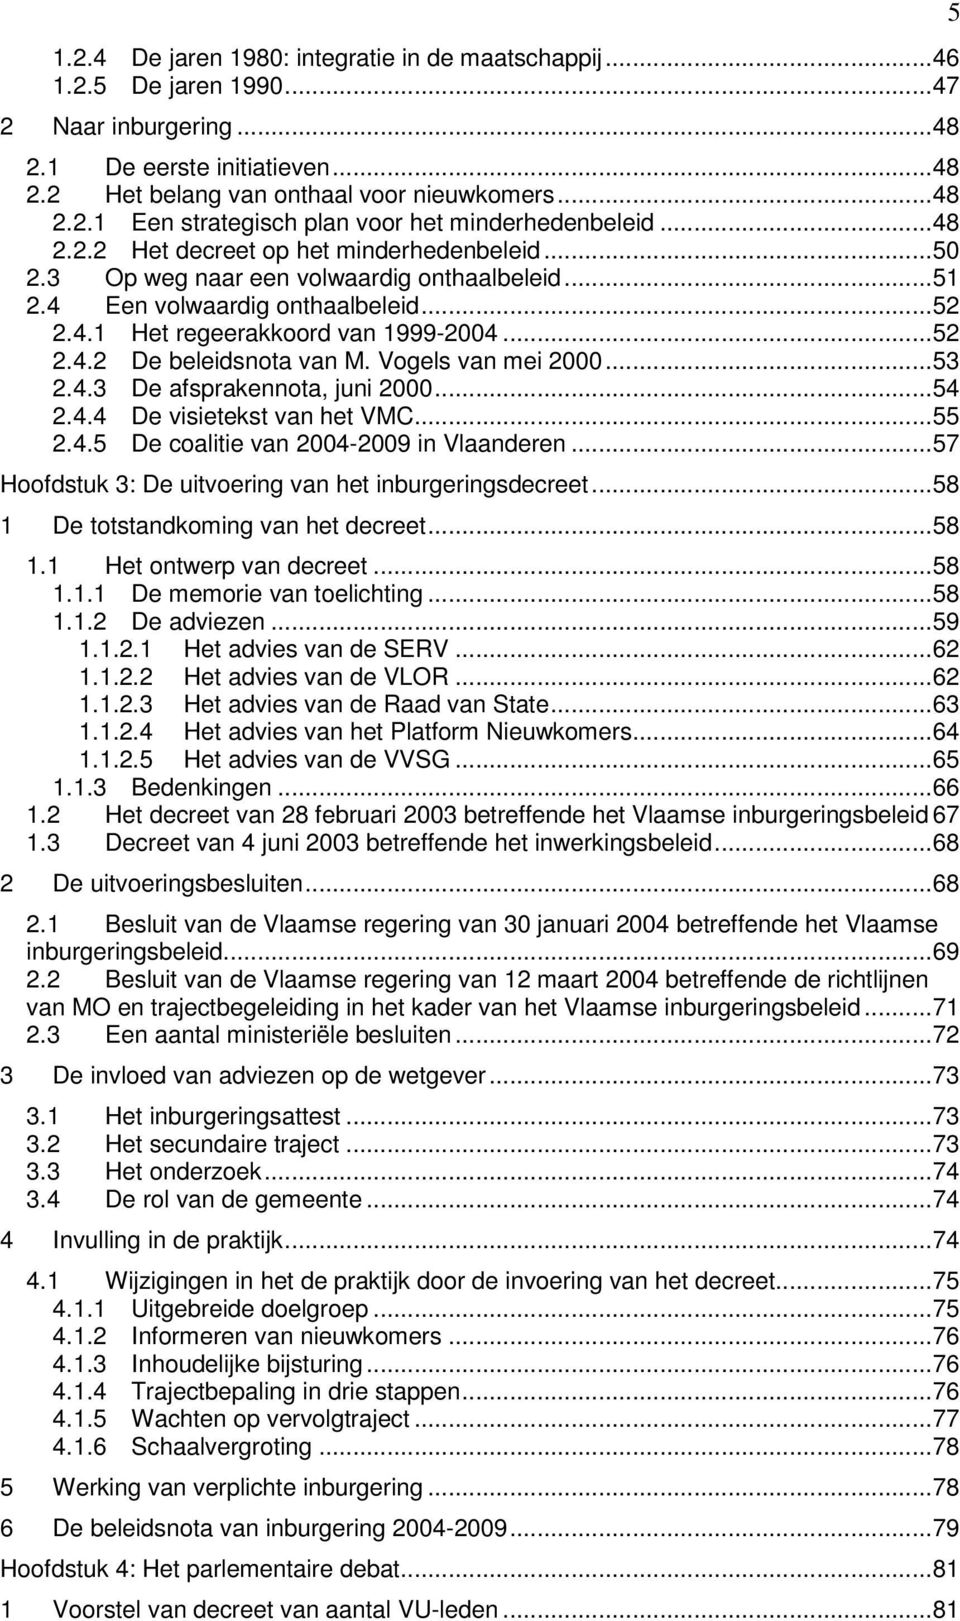 Vogels van mei 2000...53 2.4.3 De afsprakennota, juni 2000...54 2.4.4 De visietekst van het VMC...55 2.4.5 De coalitie van 2004-2009 in Vlaanderen.